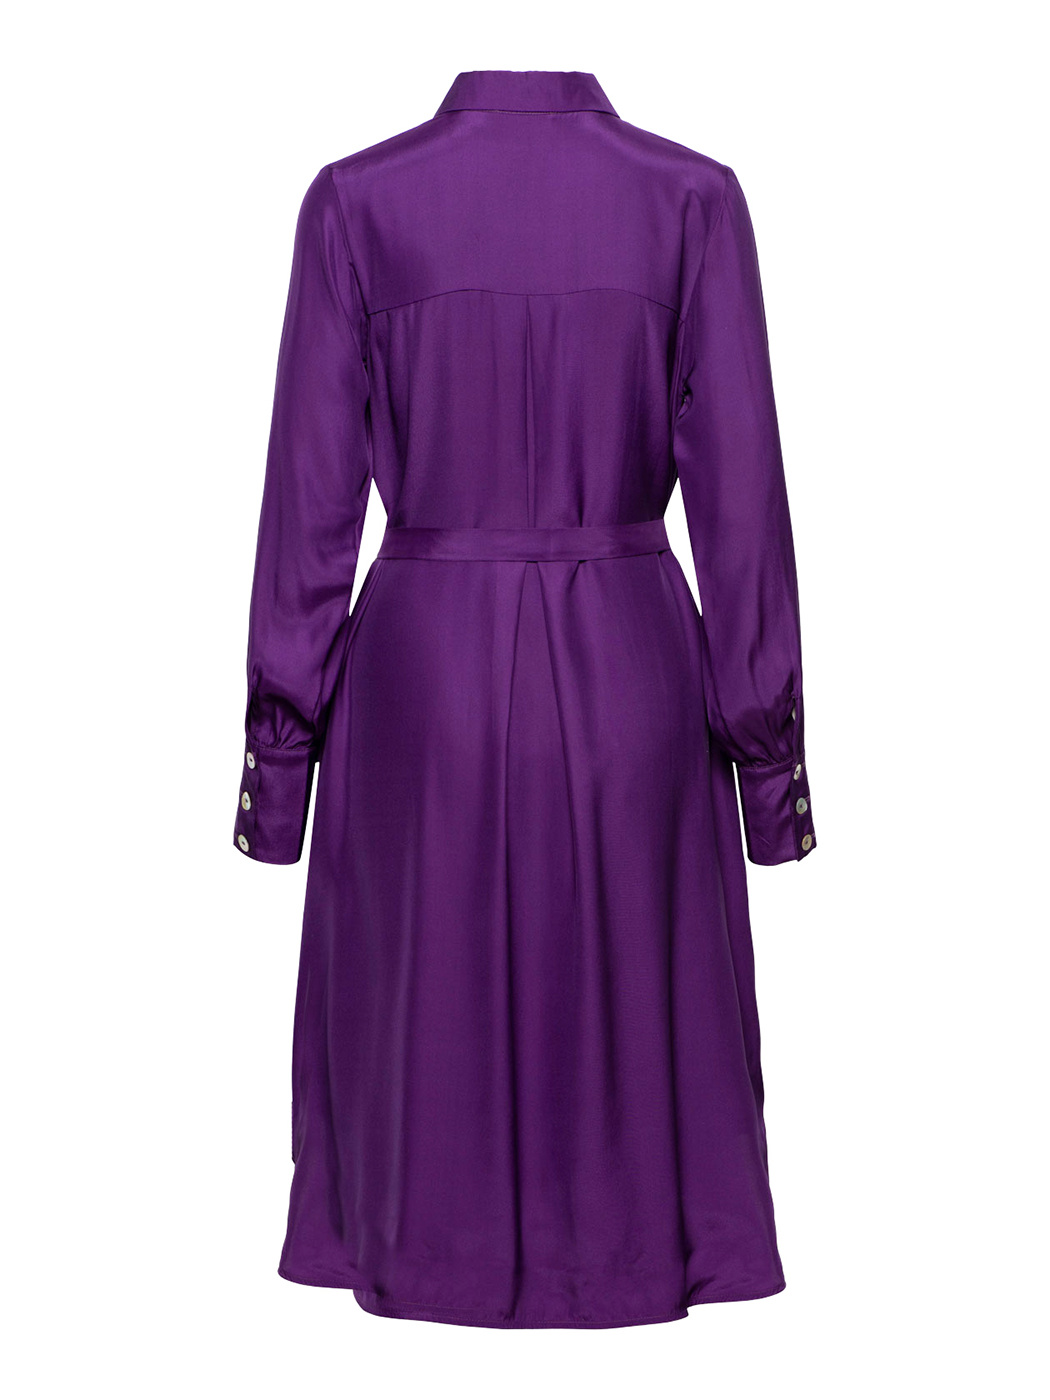 Power dress - purple silk - Dutchess - Shop